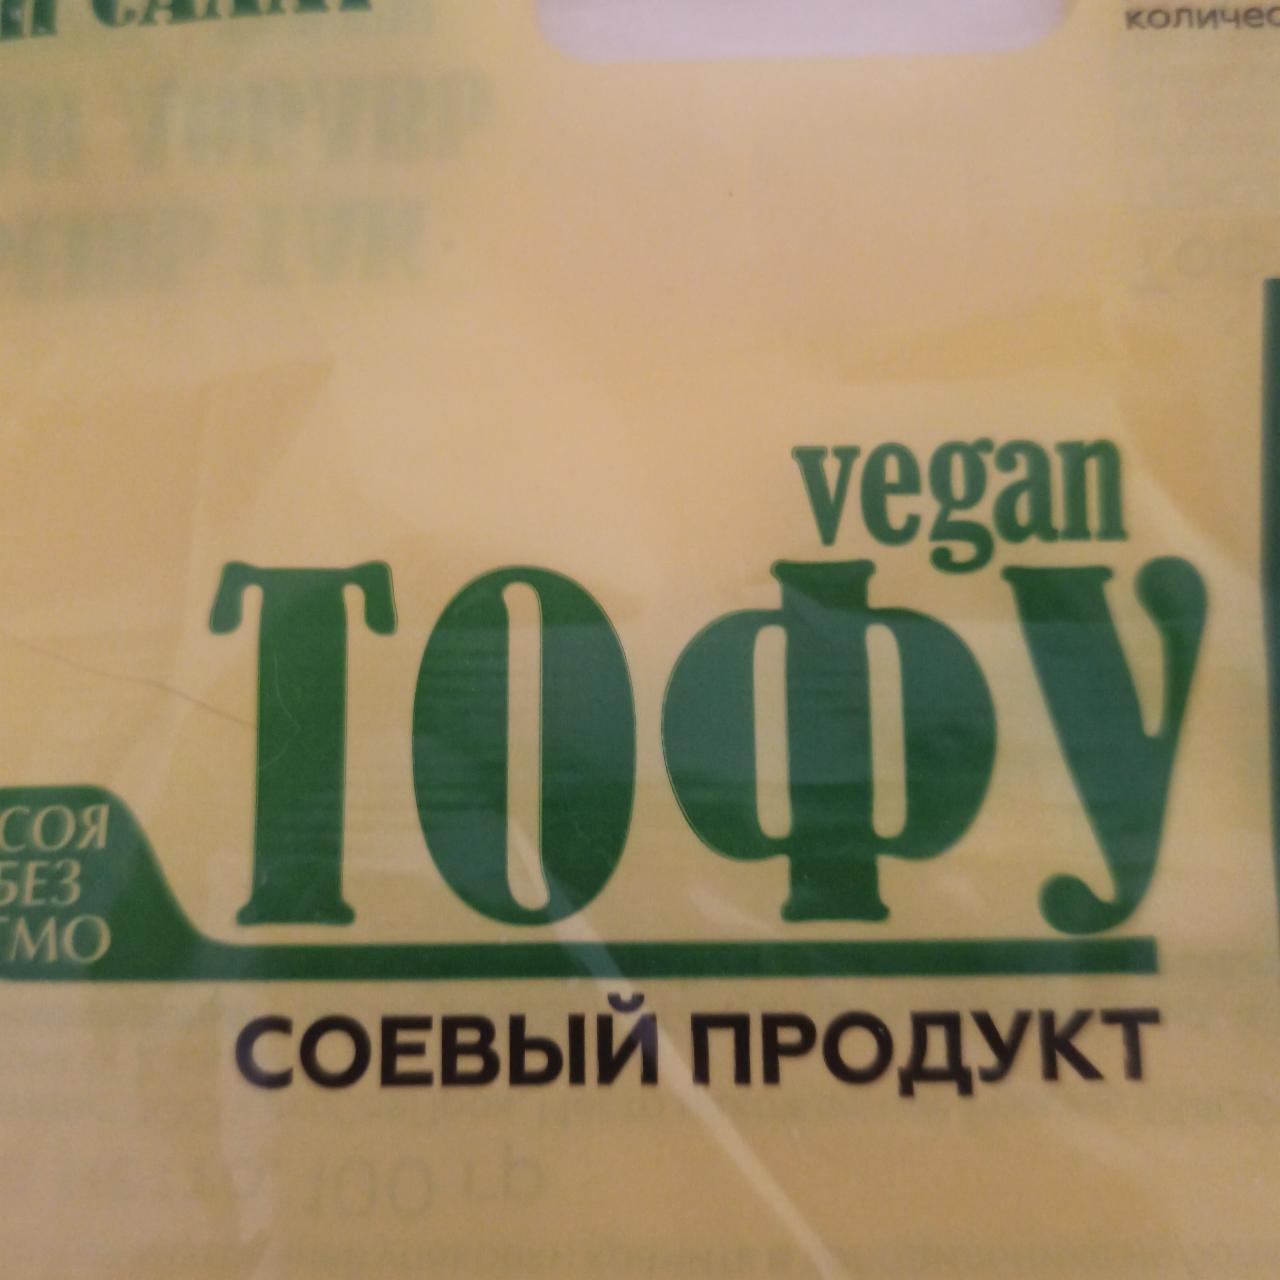 Фото - Тофу с араматом копчения Vegan